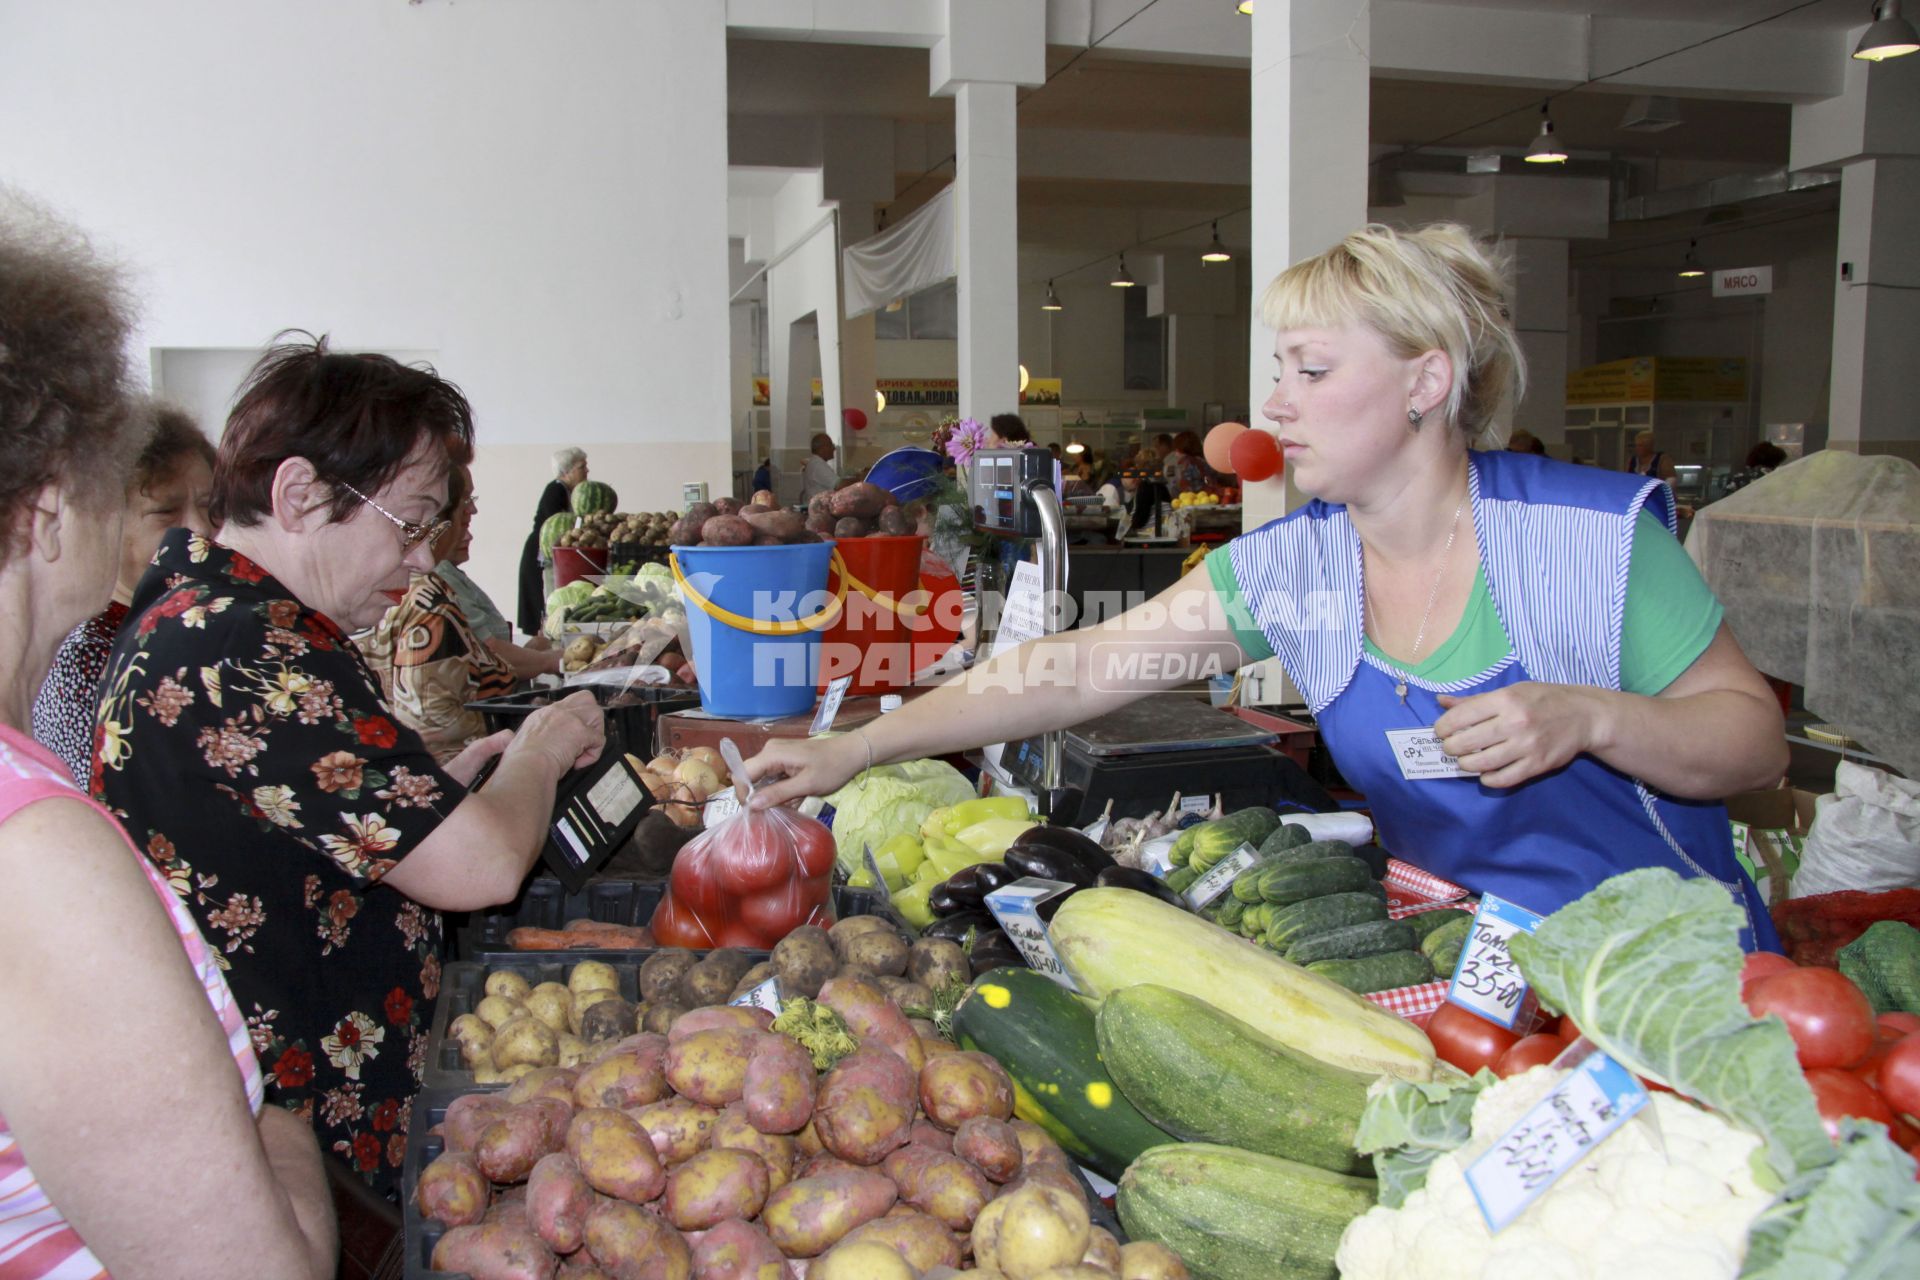 Торговля овощами на рынке. Продавец передает покупателю пакет с помидорами.